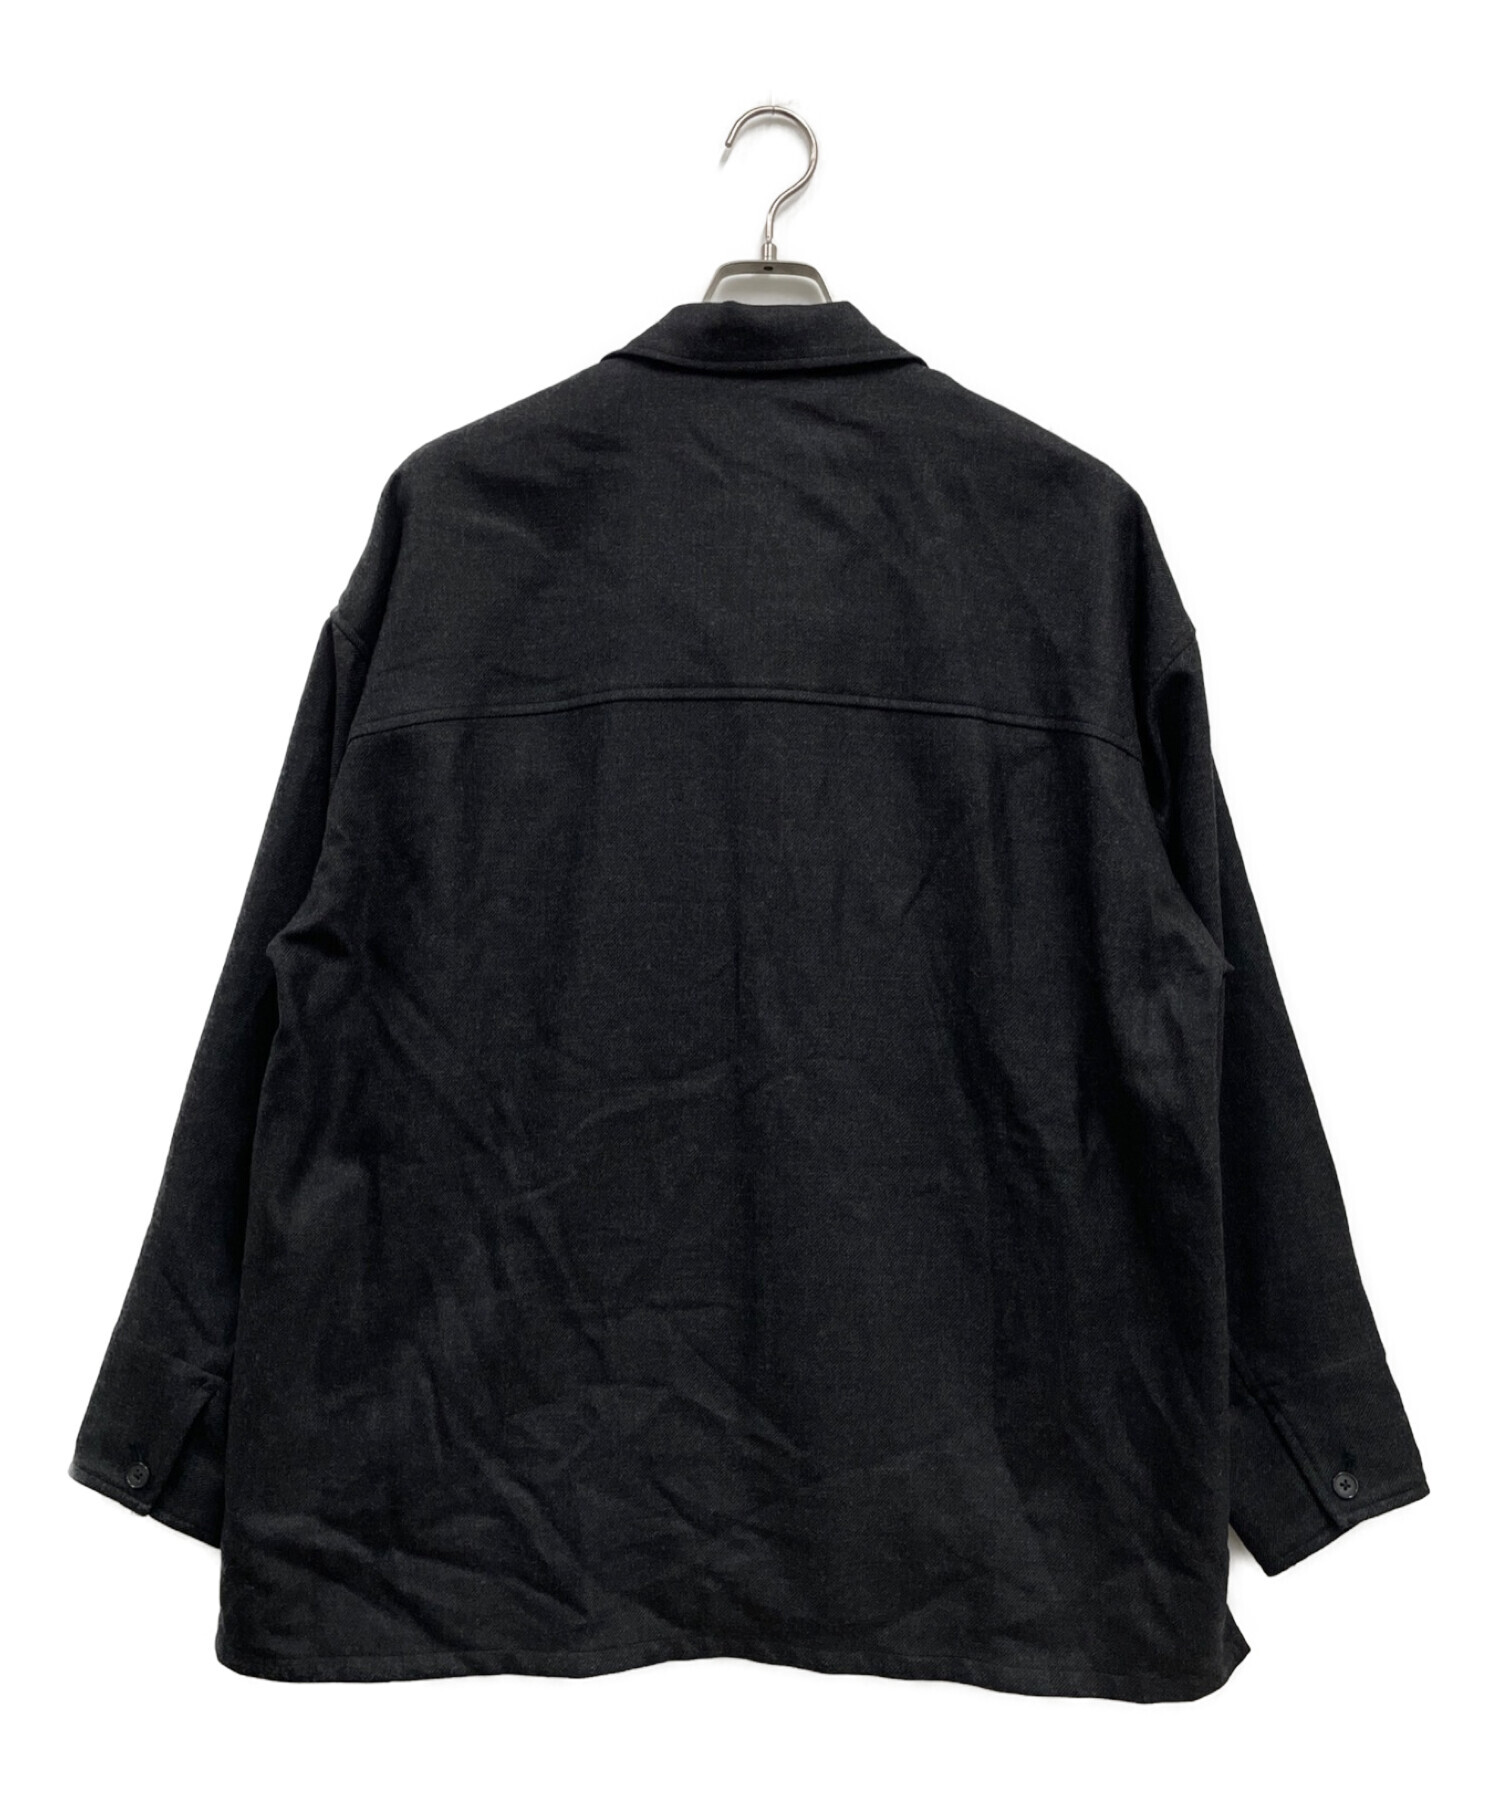 PUBLIC TOKYO (パブリックトウキョウ) ウィナーズルーズシャツジャケット ブラック サイズ:2